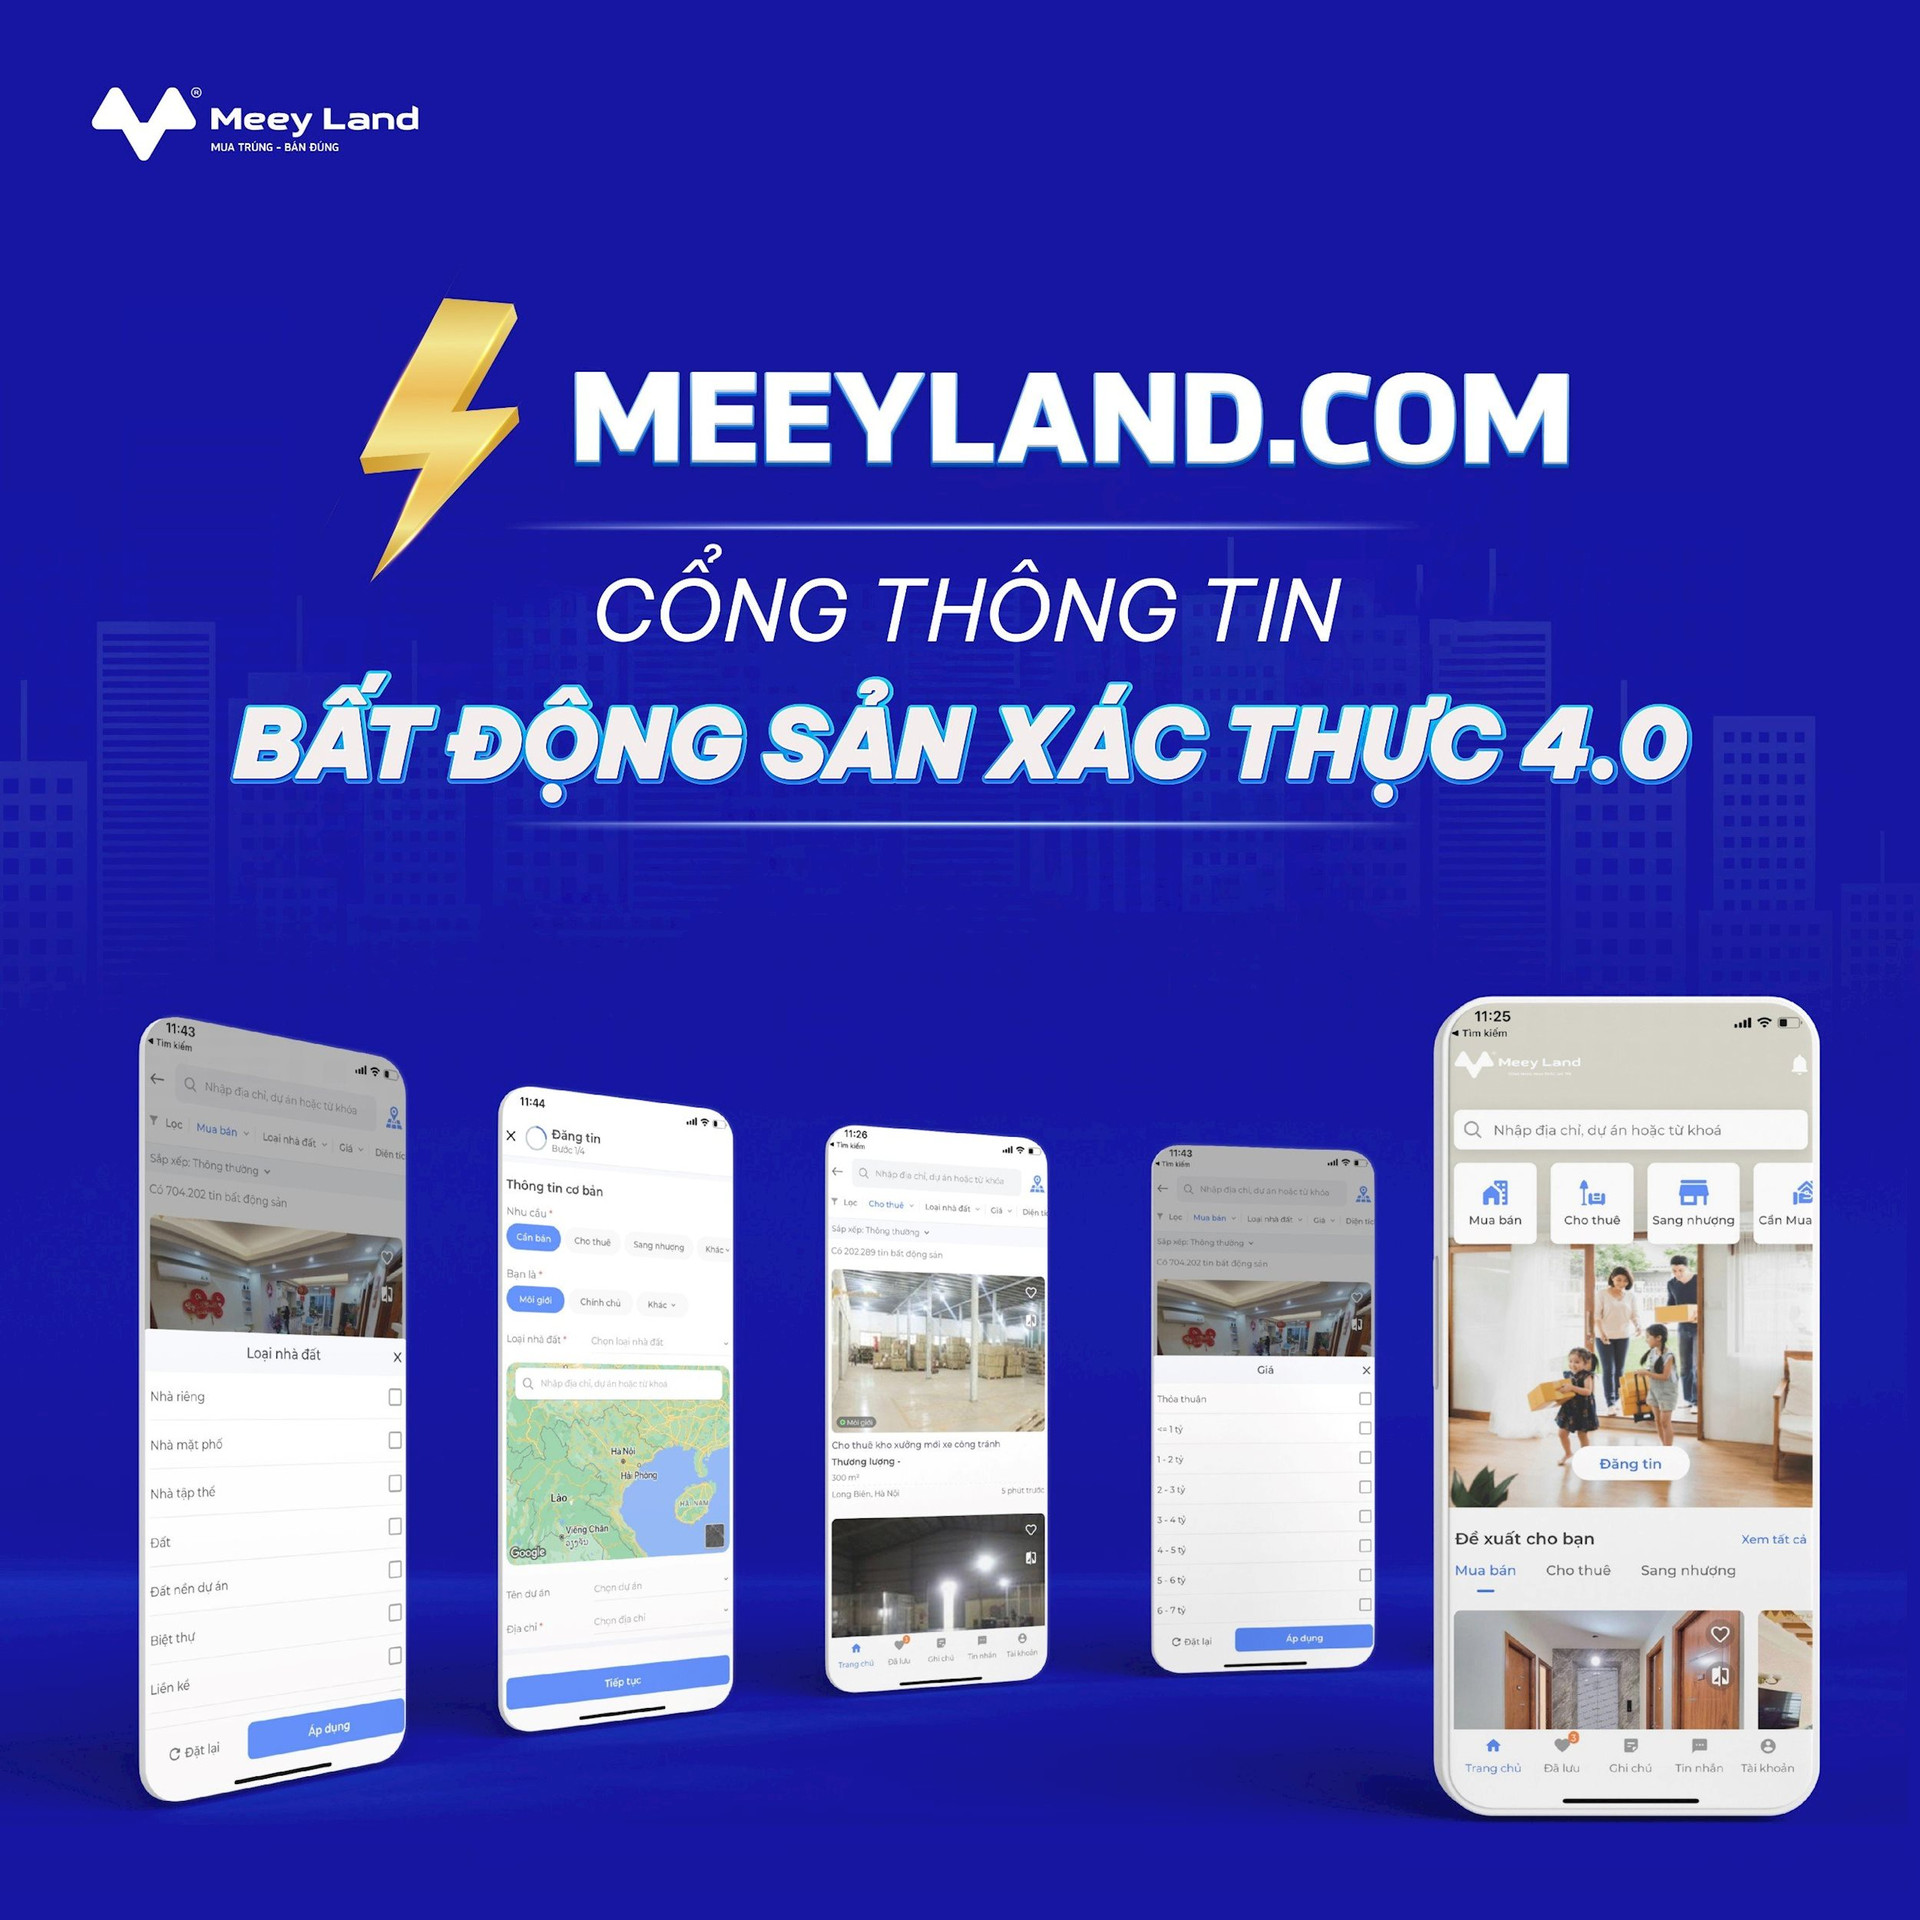 Cổng thông tin bất động sản xác thực 4.0 meeyland.com - Giải pháp tối ưu với mức chi phí hấp dẫn